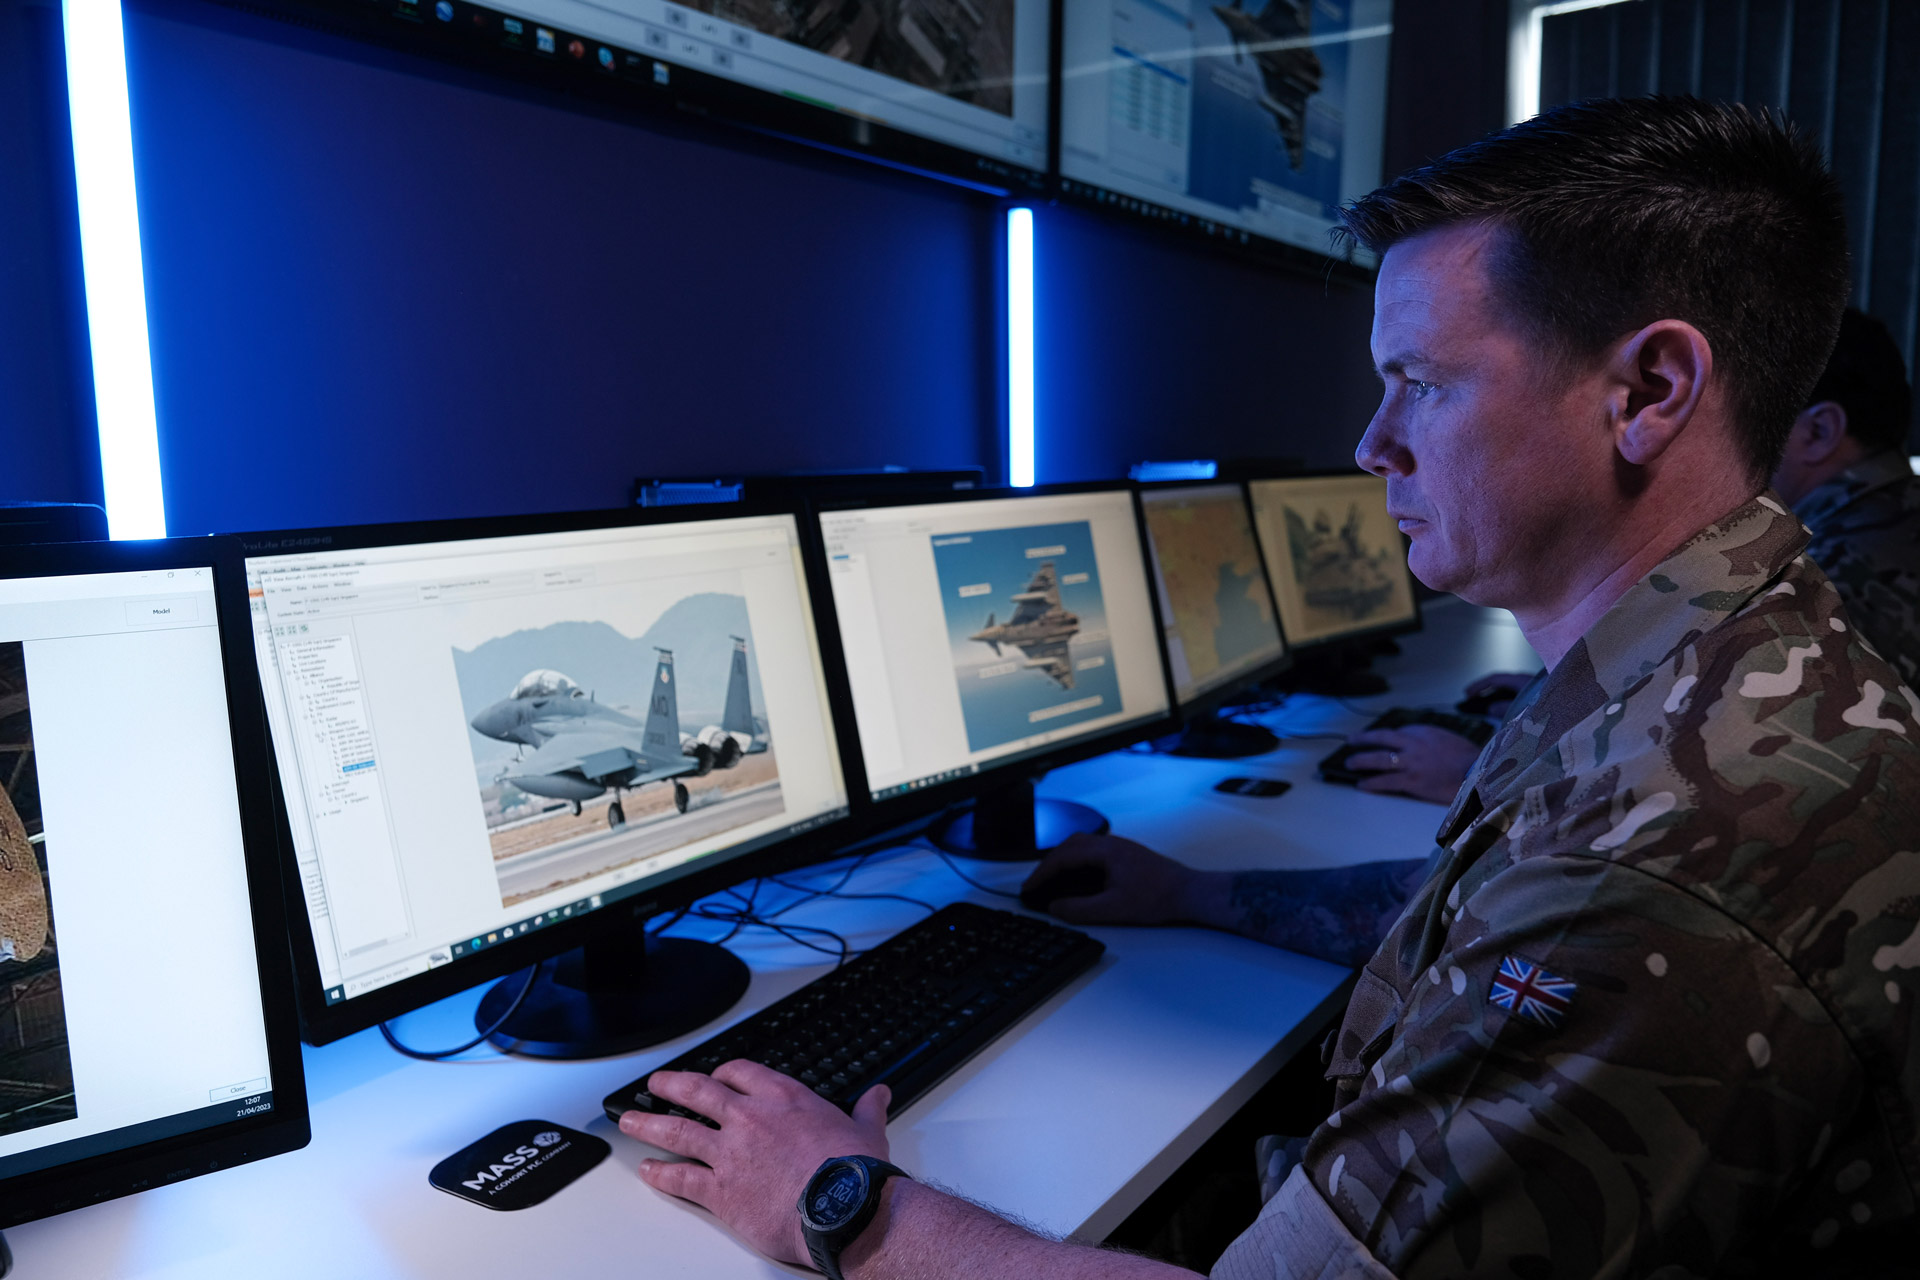 electronic warfare simulation and training at MASS